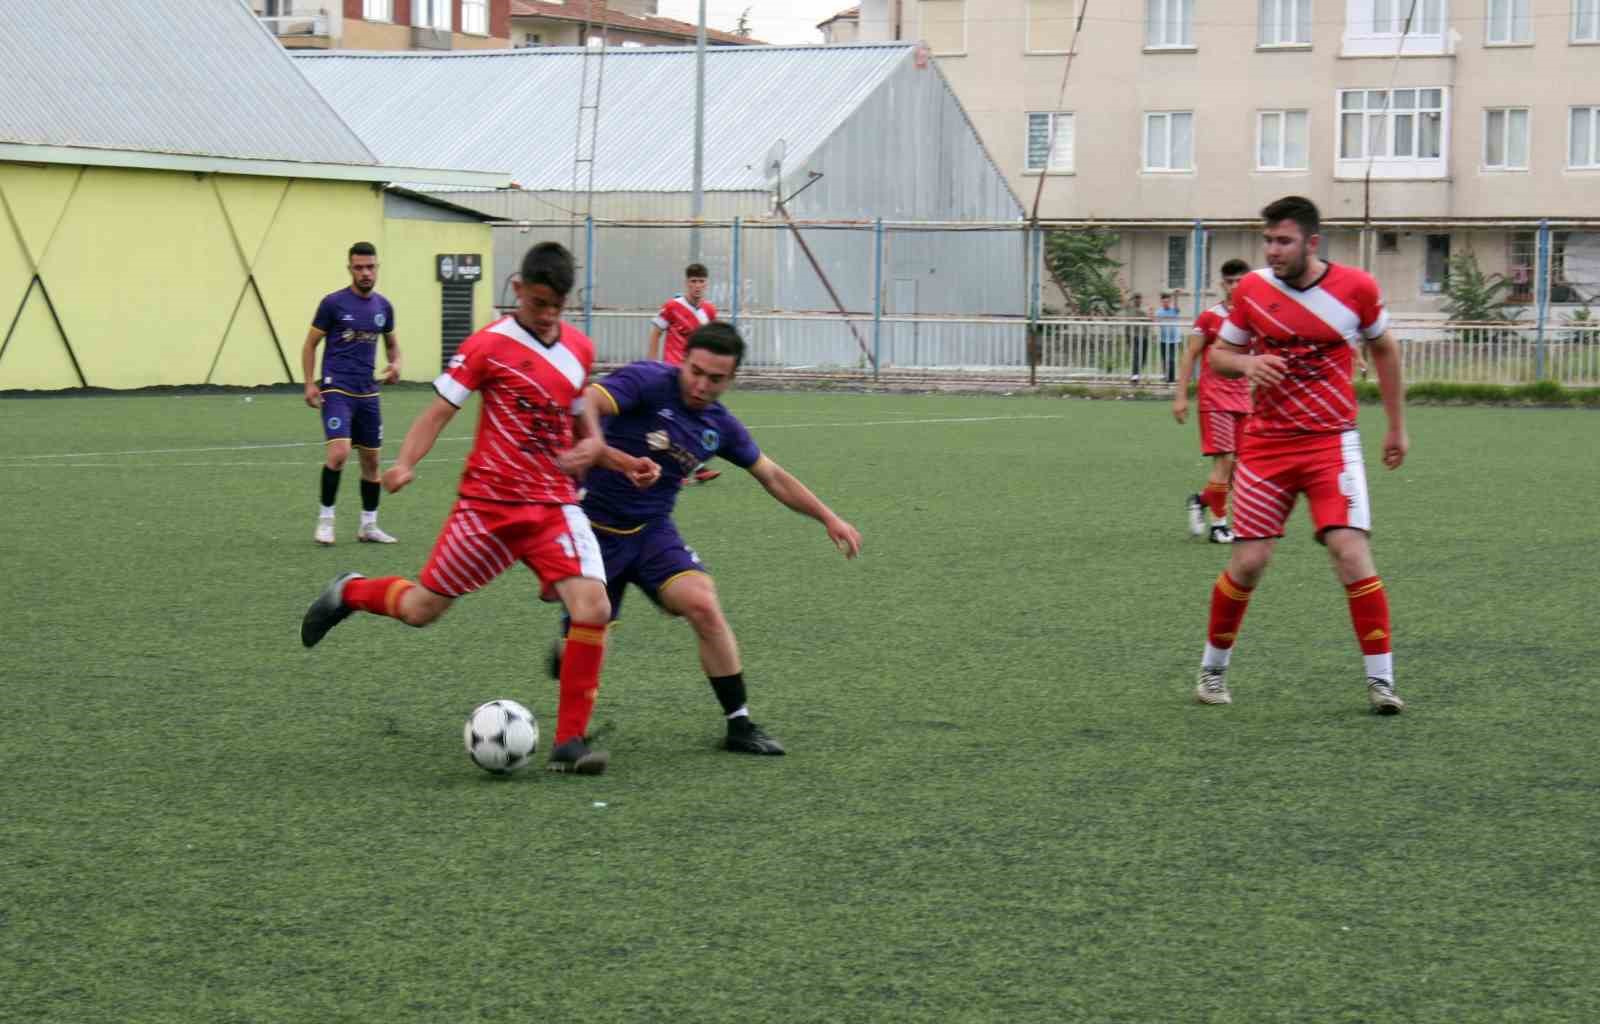 Kocasinan Gençlikspor, Kayseri İdman Yurdu’nu 2-0’lık skorla mağlup etti.